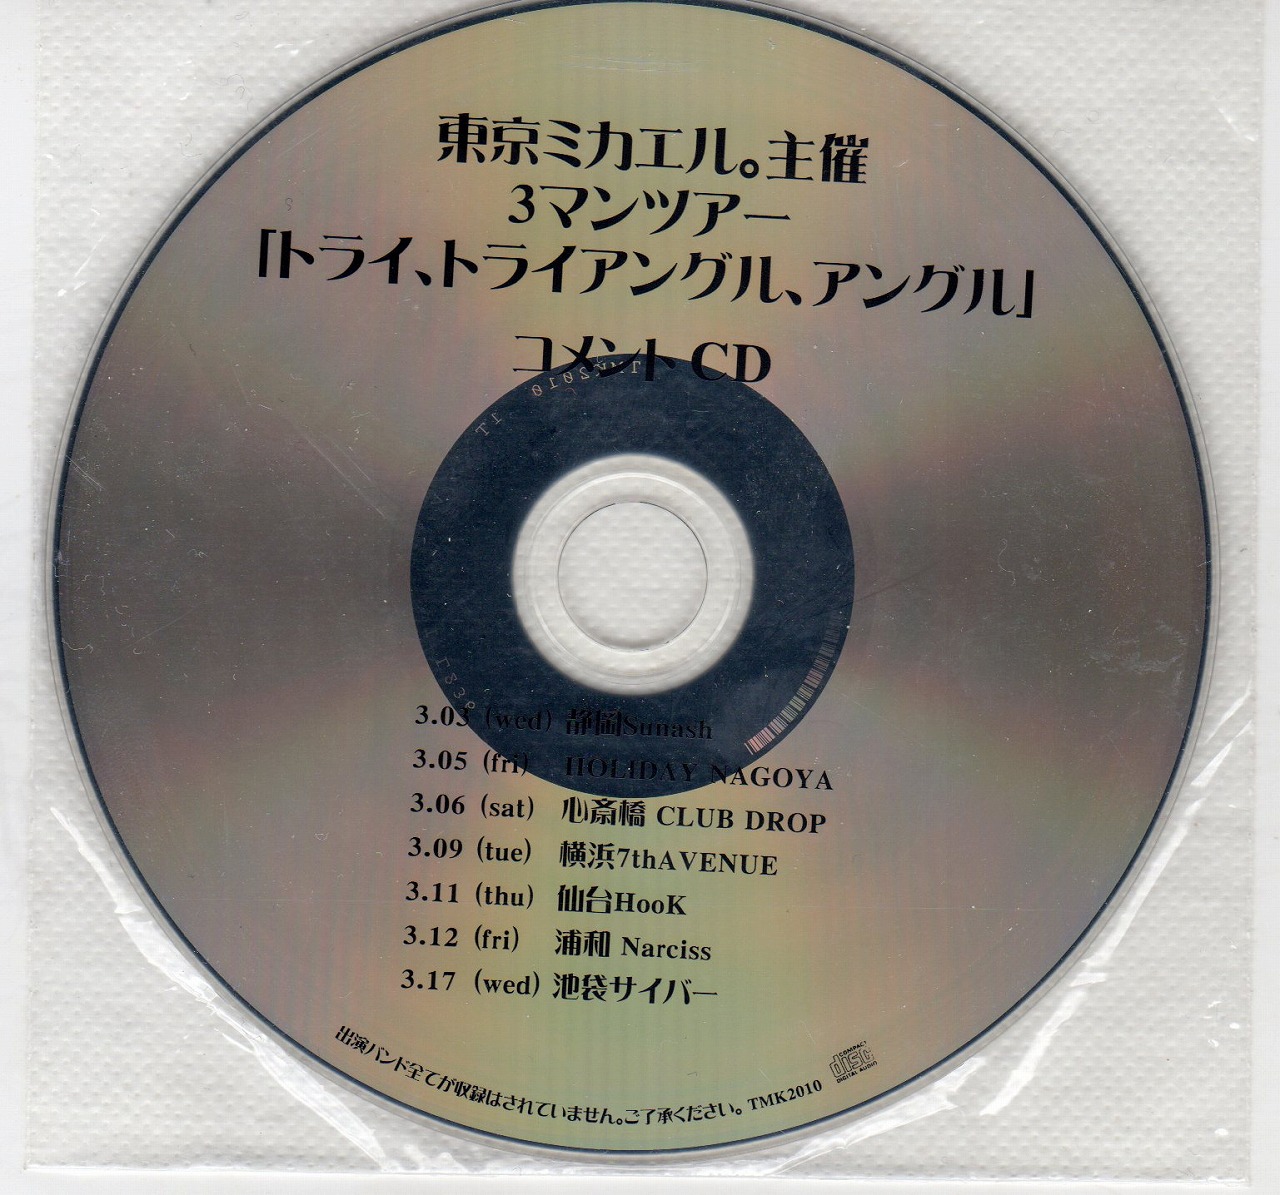 トウキョウミカエル の CD 東京ミカエル。主催3マンツアー「トライ、トライアングル、アングル」コメントCD